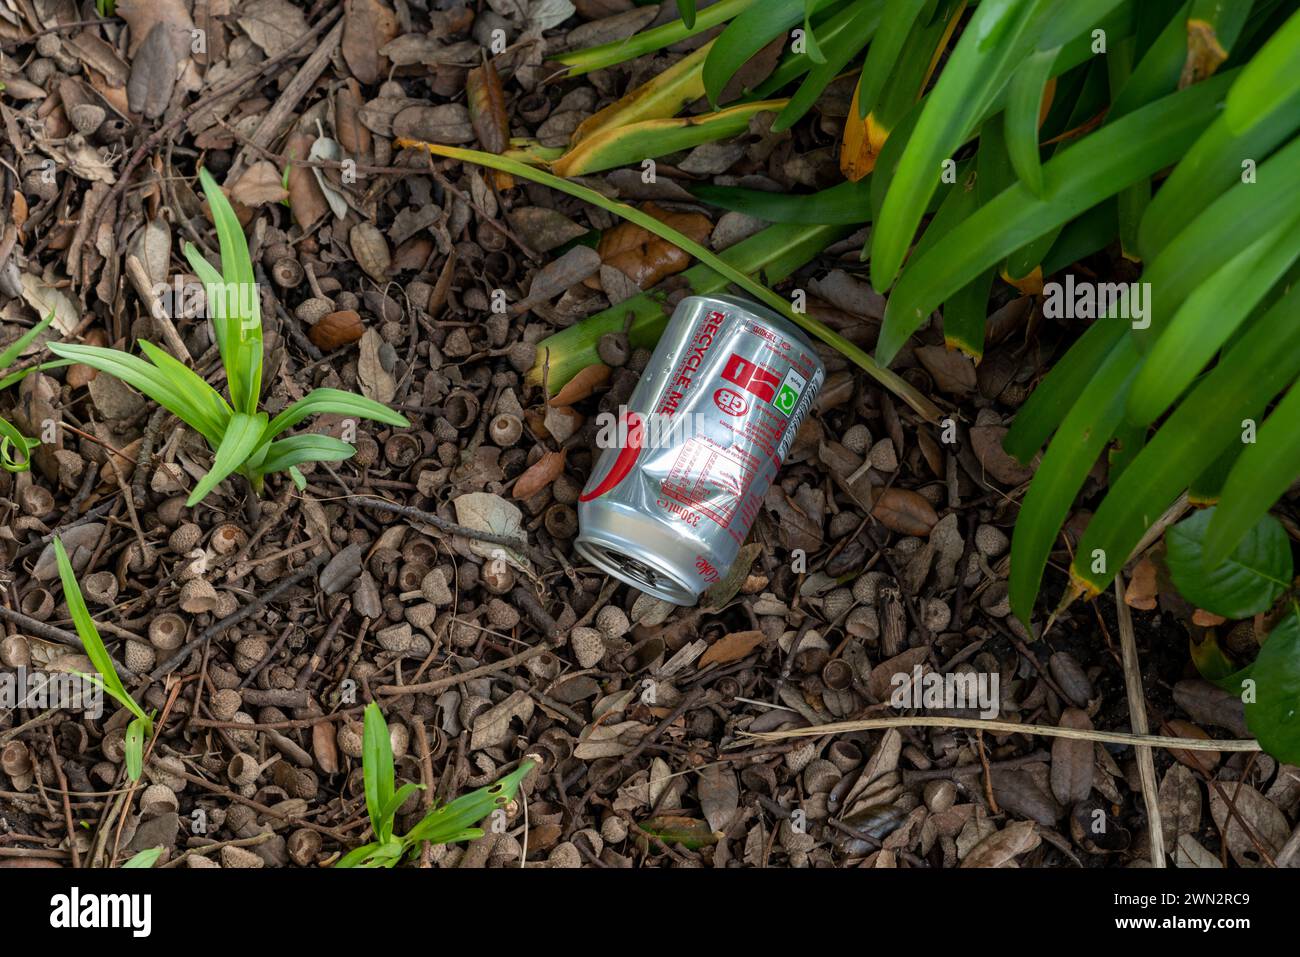 L'ironia di una bevanda analcolica in alluminio scartata può essere gettata in alcuni cespugli, con il testo "riciclarmi" chiaramente visibile. Foto Stock